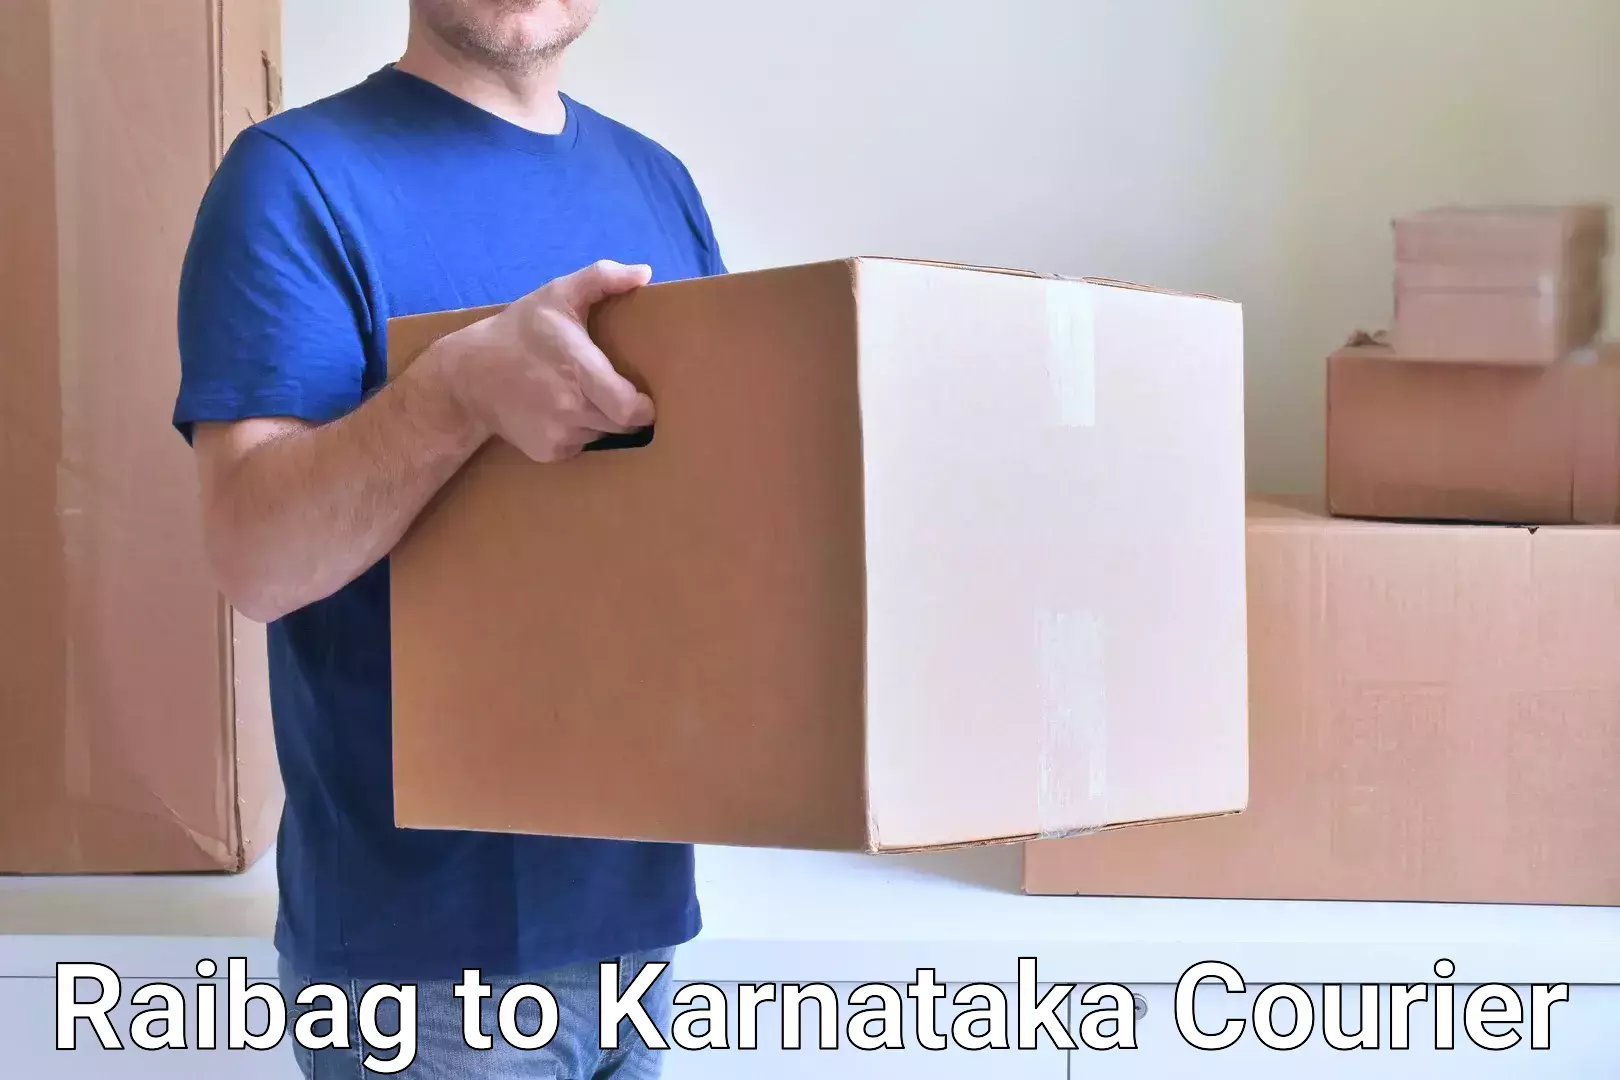 Efficient cargo handling in Raibag to Karnataka